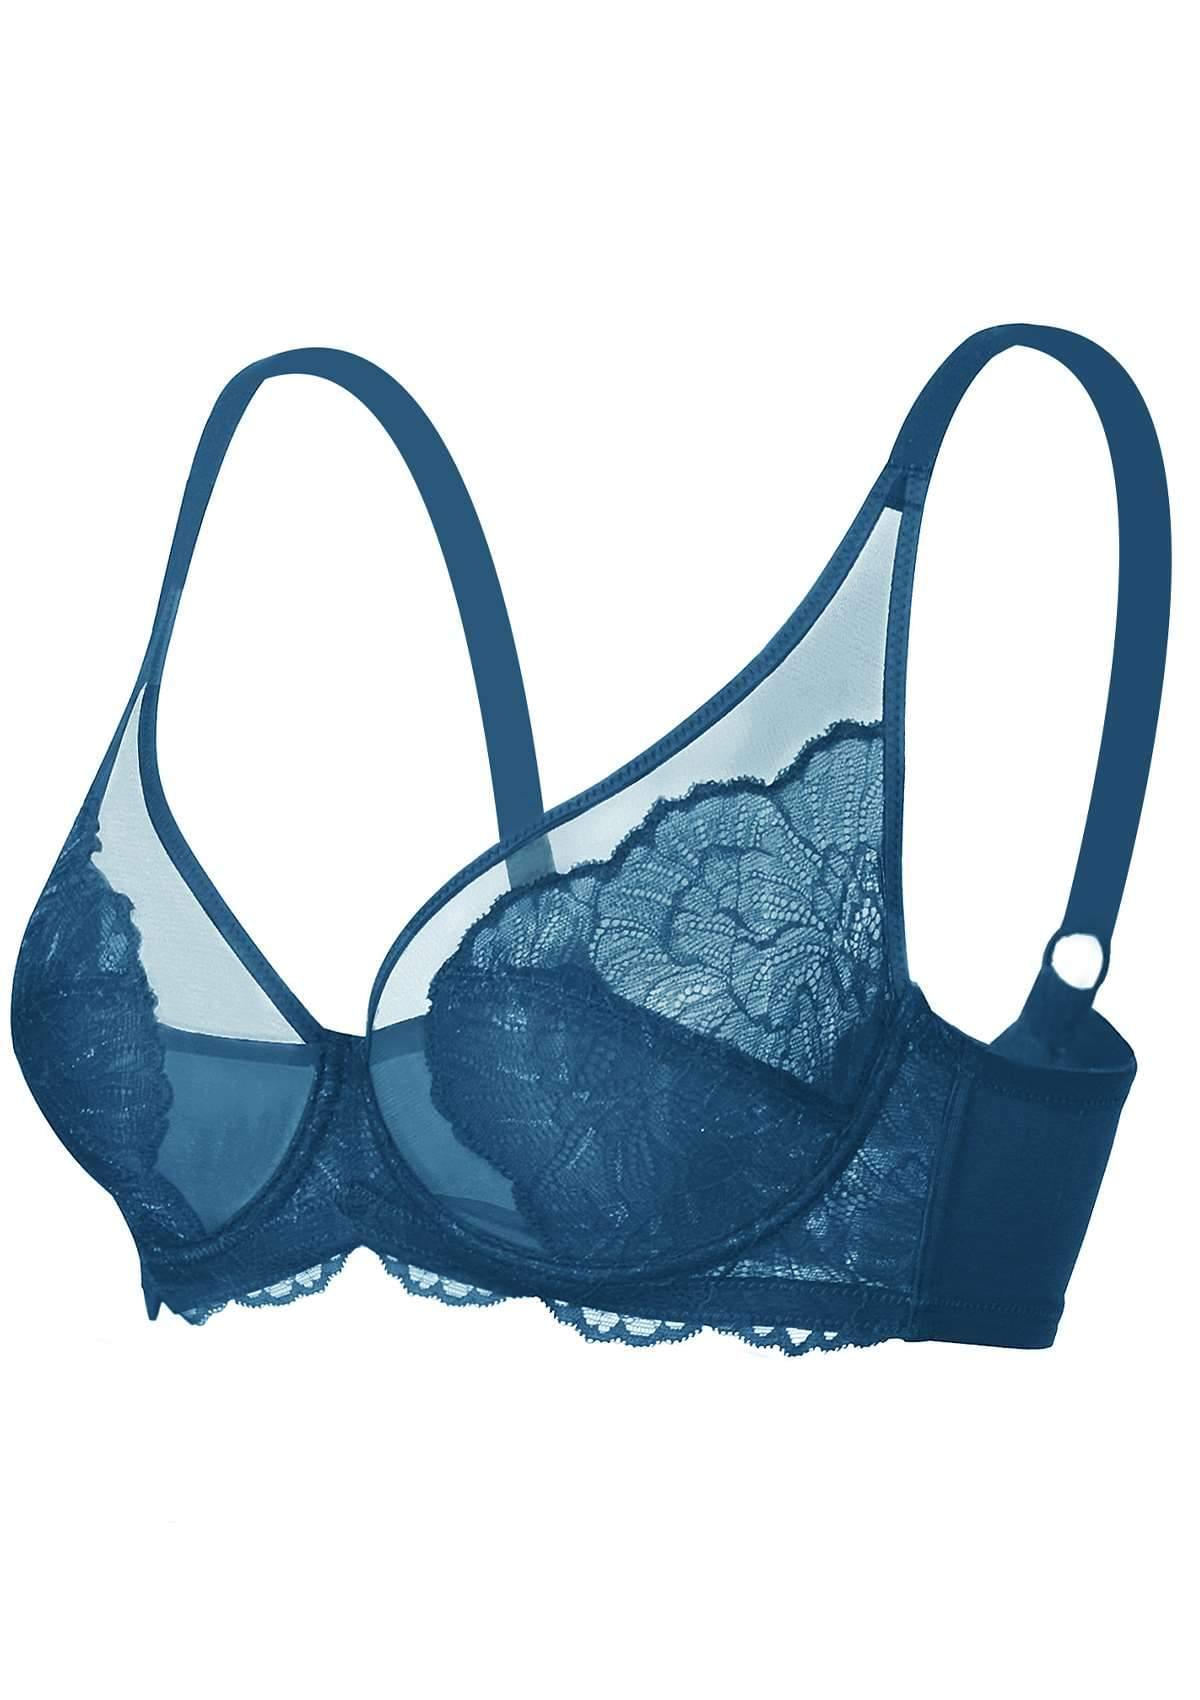 HSIA Blossom Lace Bra And Underwear Sets: Comfortable Plus Size Bra - Biscay Blue / 40 / DD/E